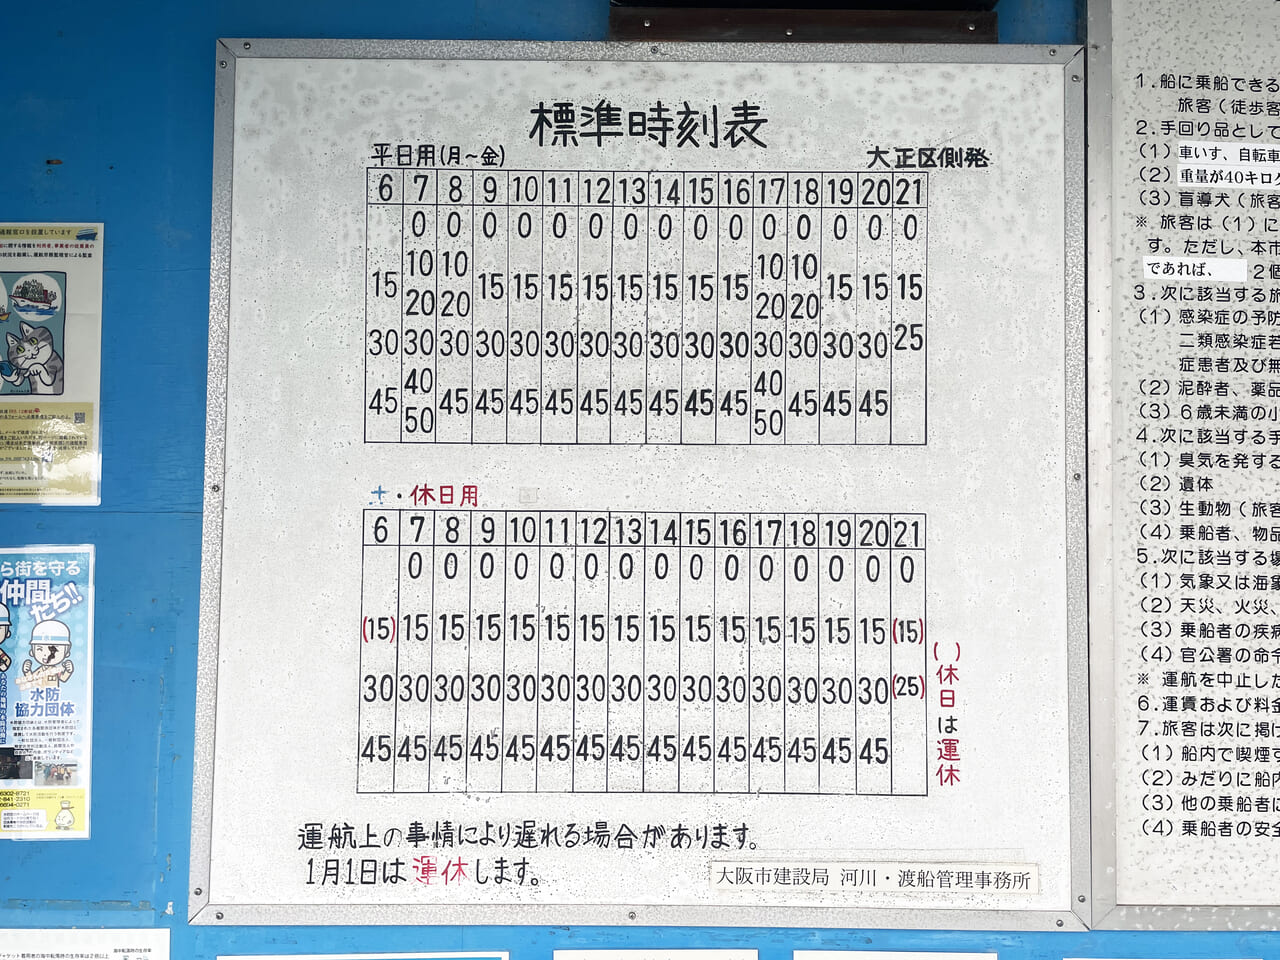 大正区の千島の落合上渡船場の時刻表